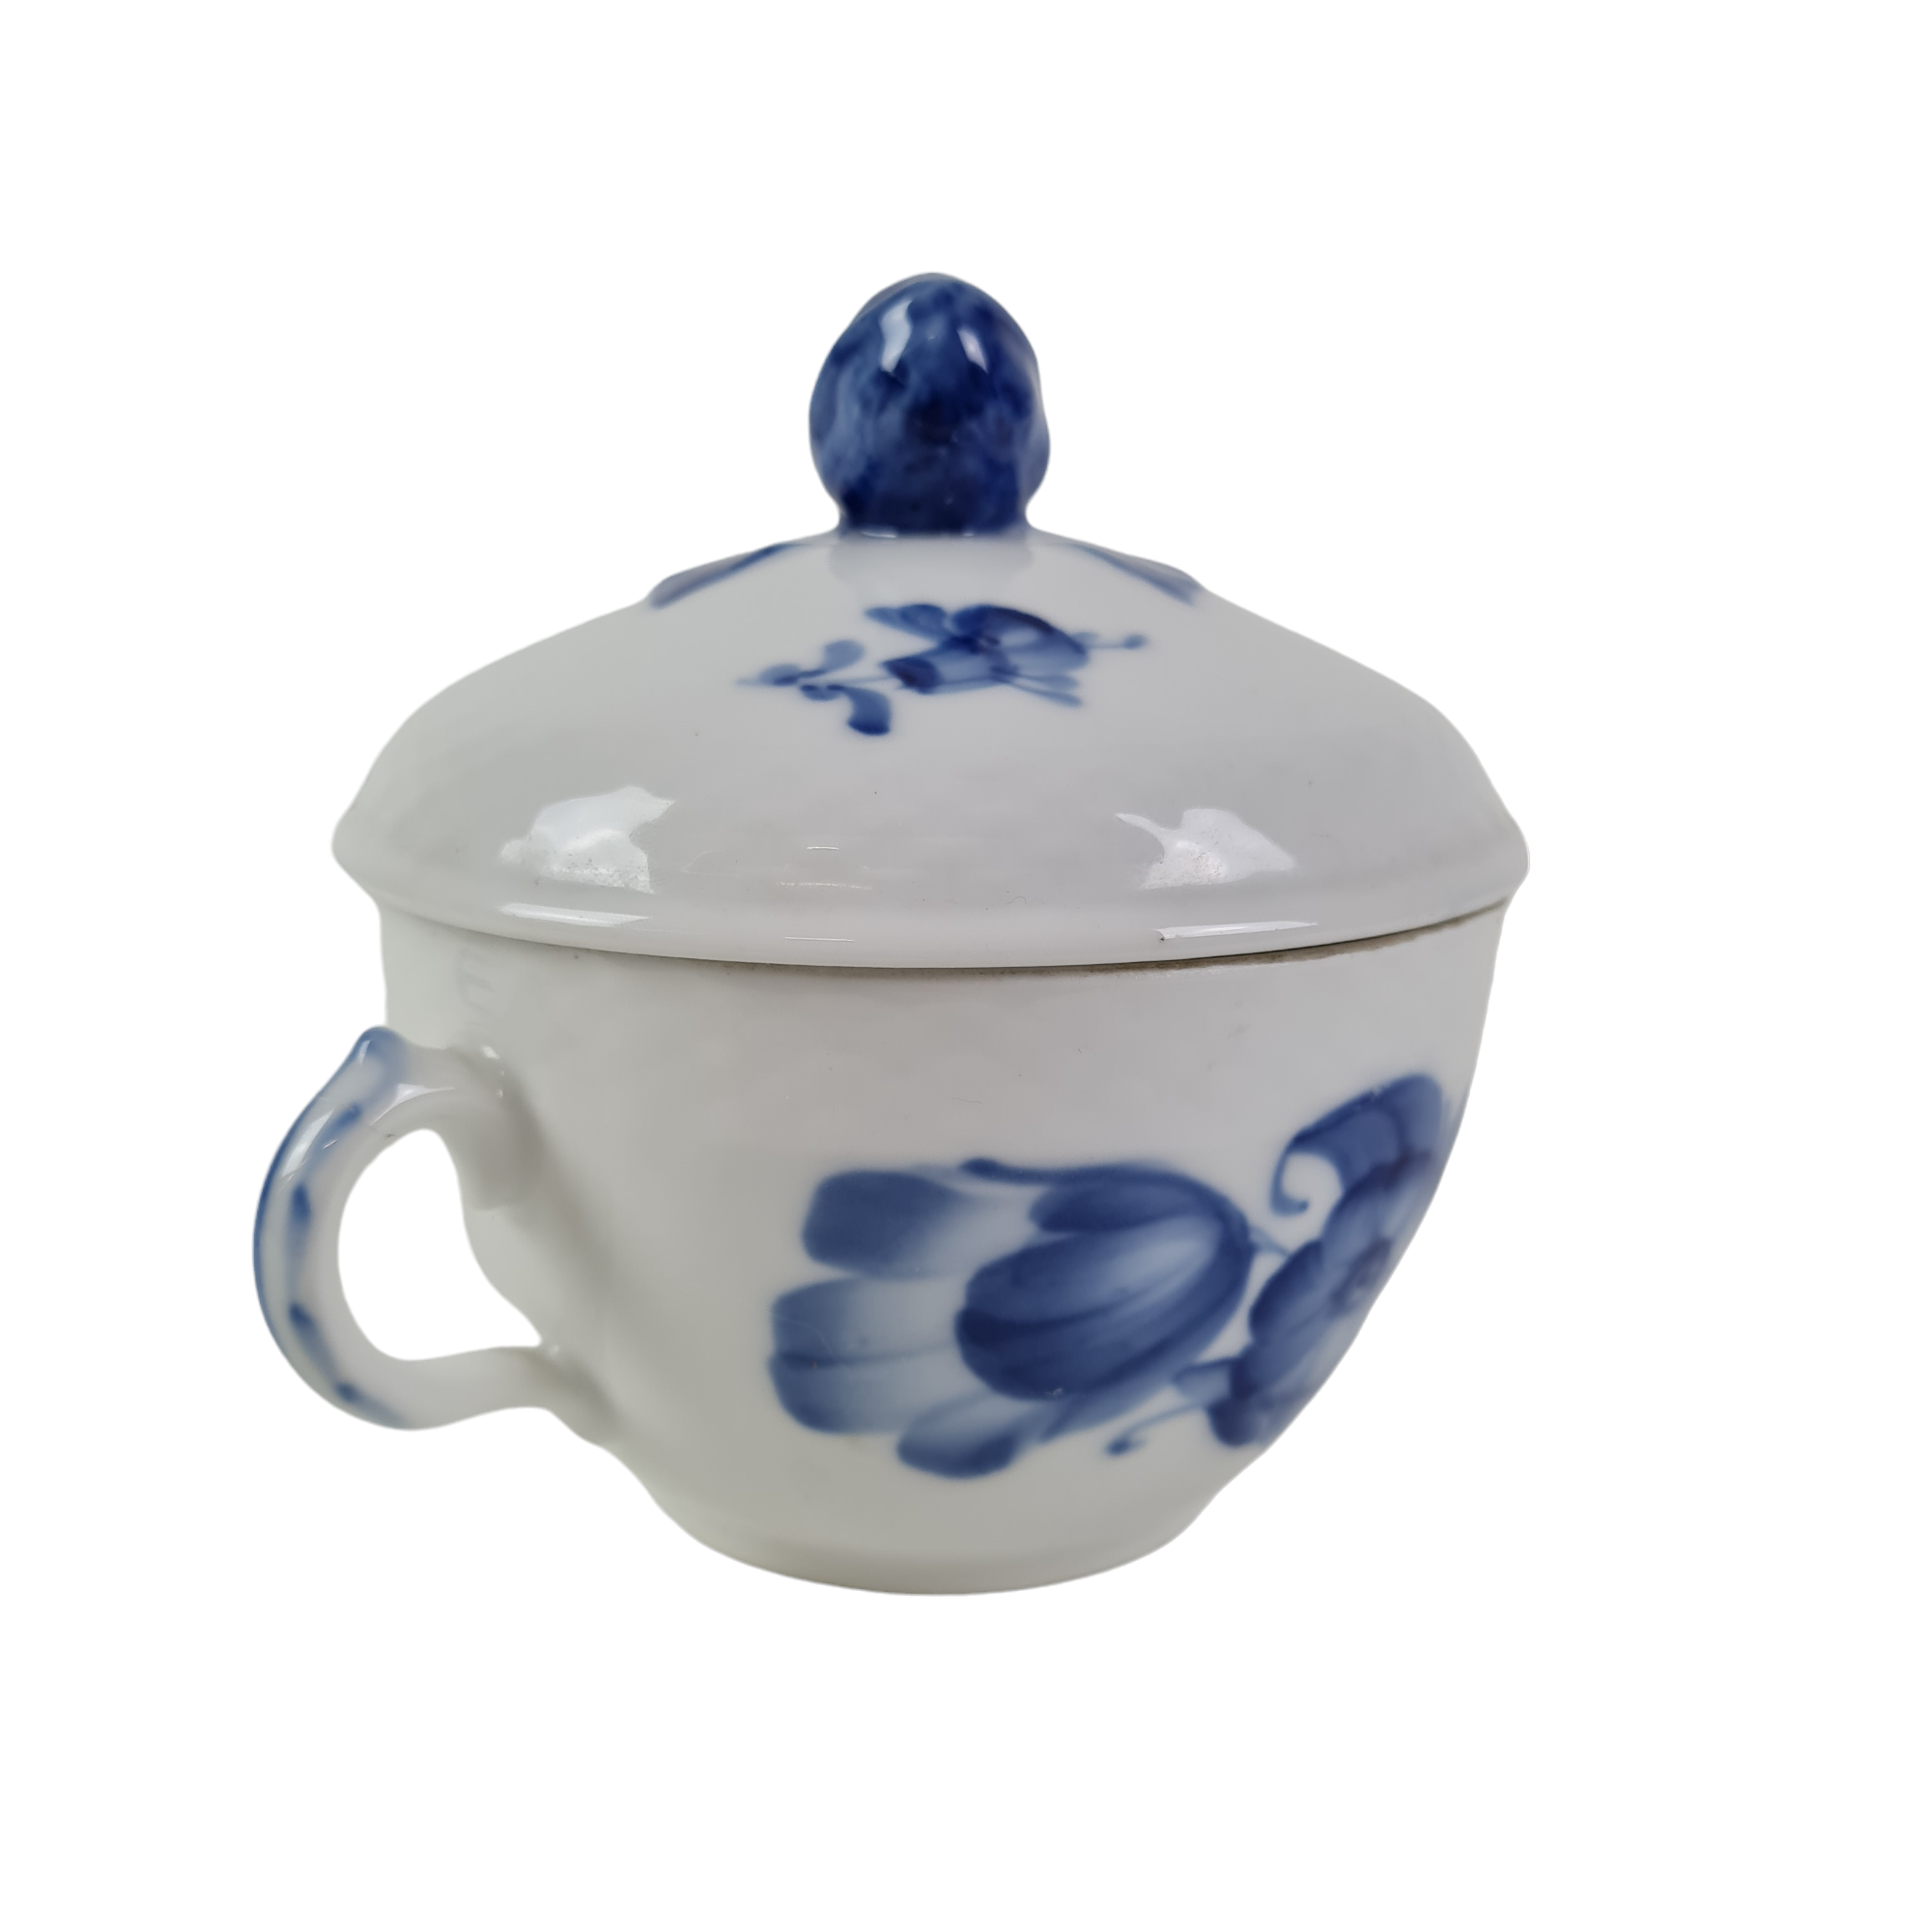 Blue Flower, braided, egg cup no. 10/8179 or 696, No. 1107696, Alt.  10-8179, Arnold Krog